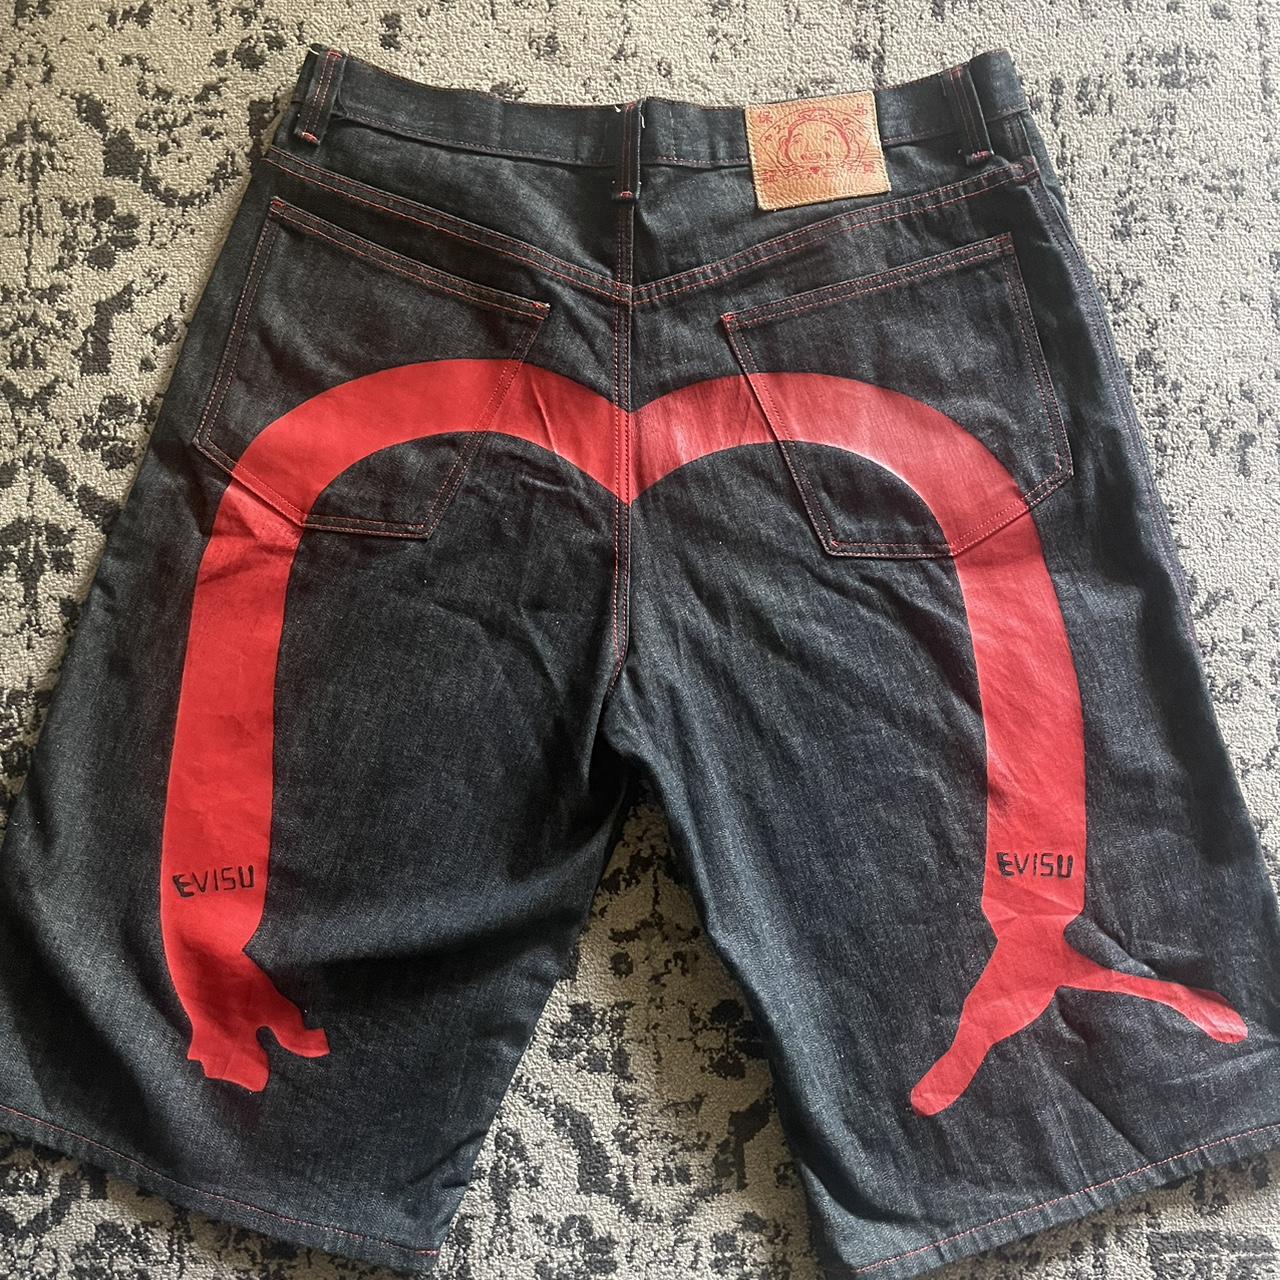 Evisu Men's Black and Red Shorts | Depop